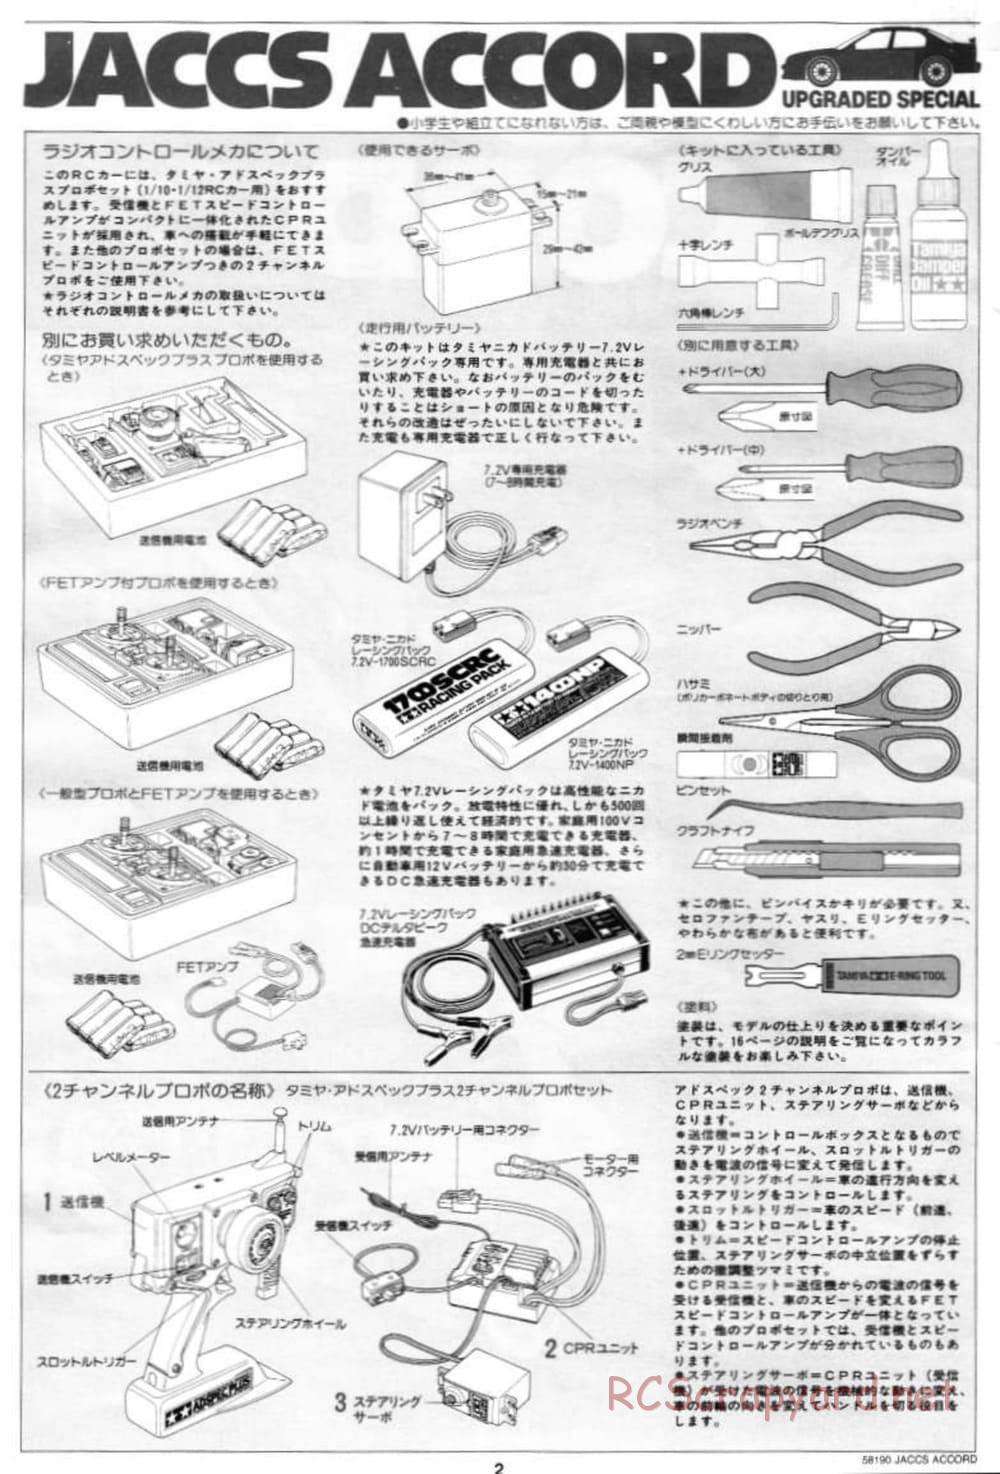 Tamiya - JACCS Honda Accord - FF-01 Chassis - Manual - Page 2